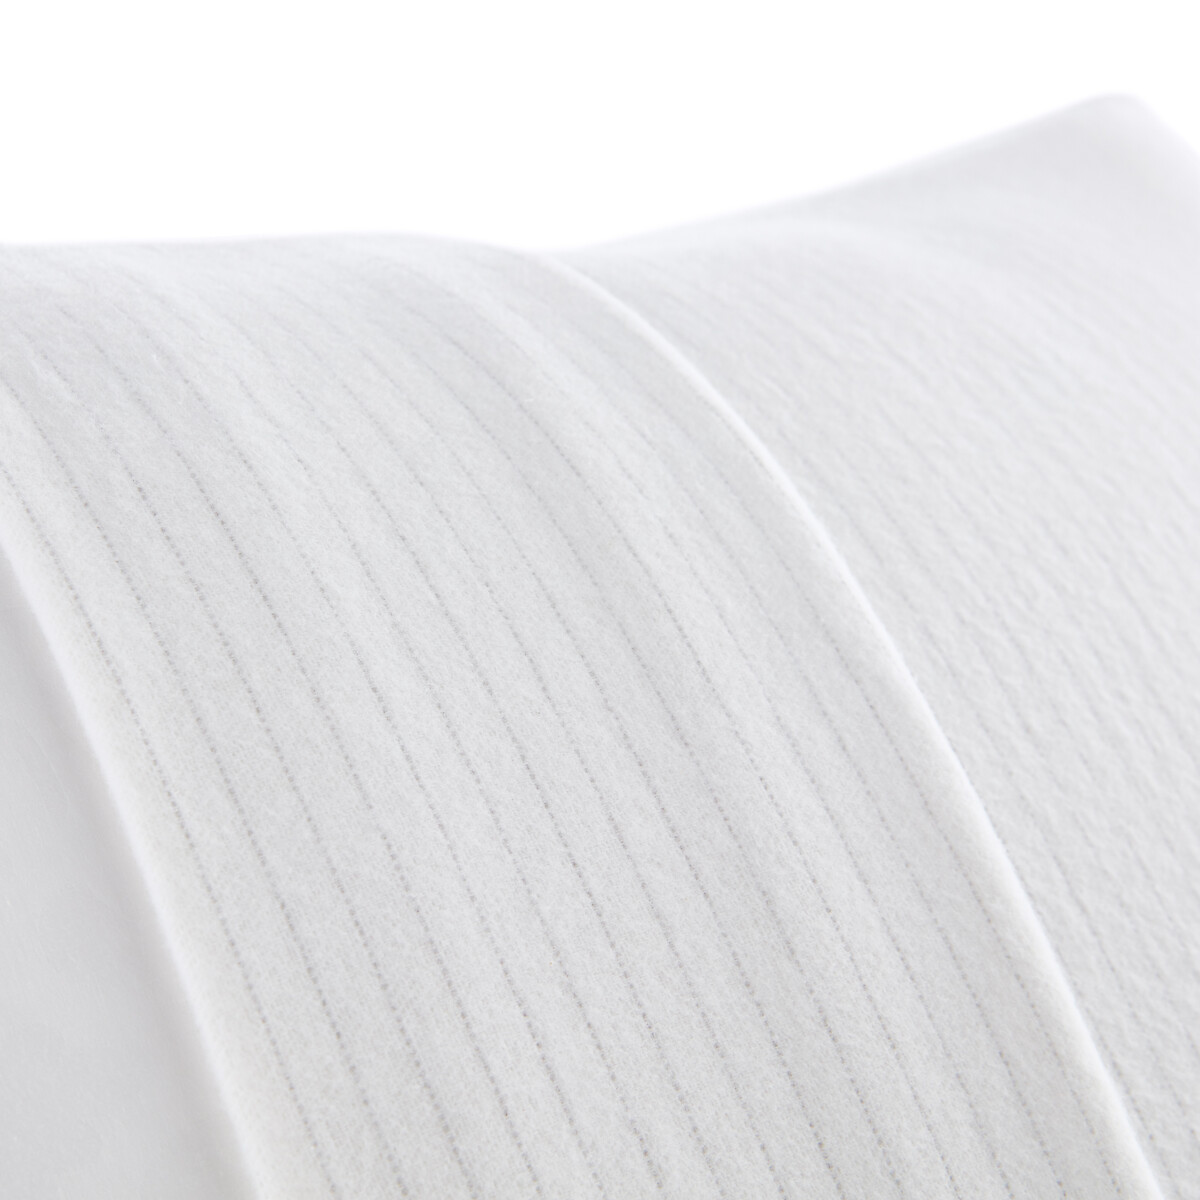 Чехол La Redoute Защитный на подушку из мольтона 40 x 60 см белый, размер 40 x 60 см - фото 2